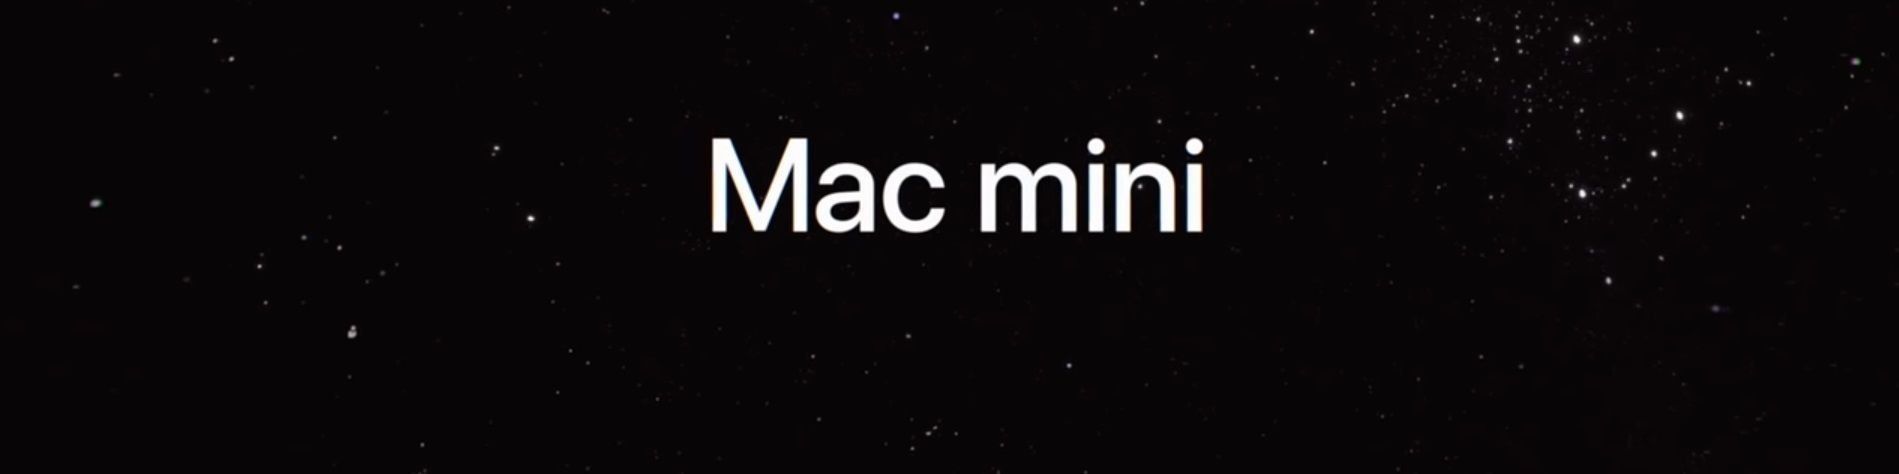 Apple Mac mini 2018 - fordeler og ulemper